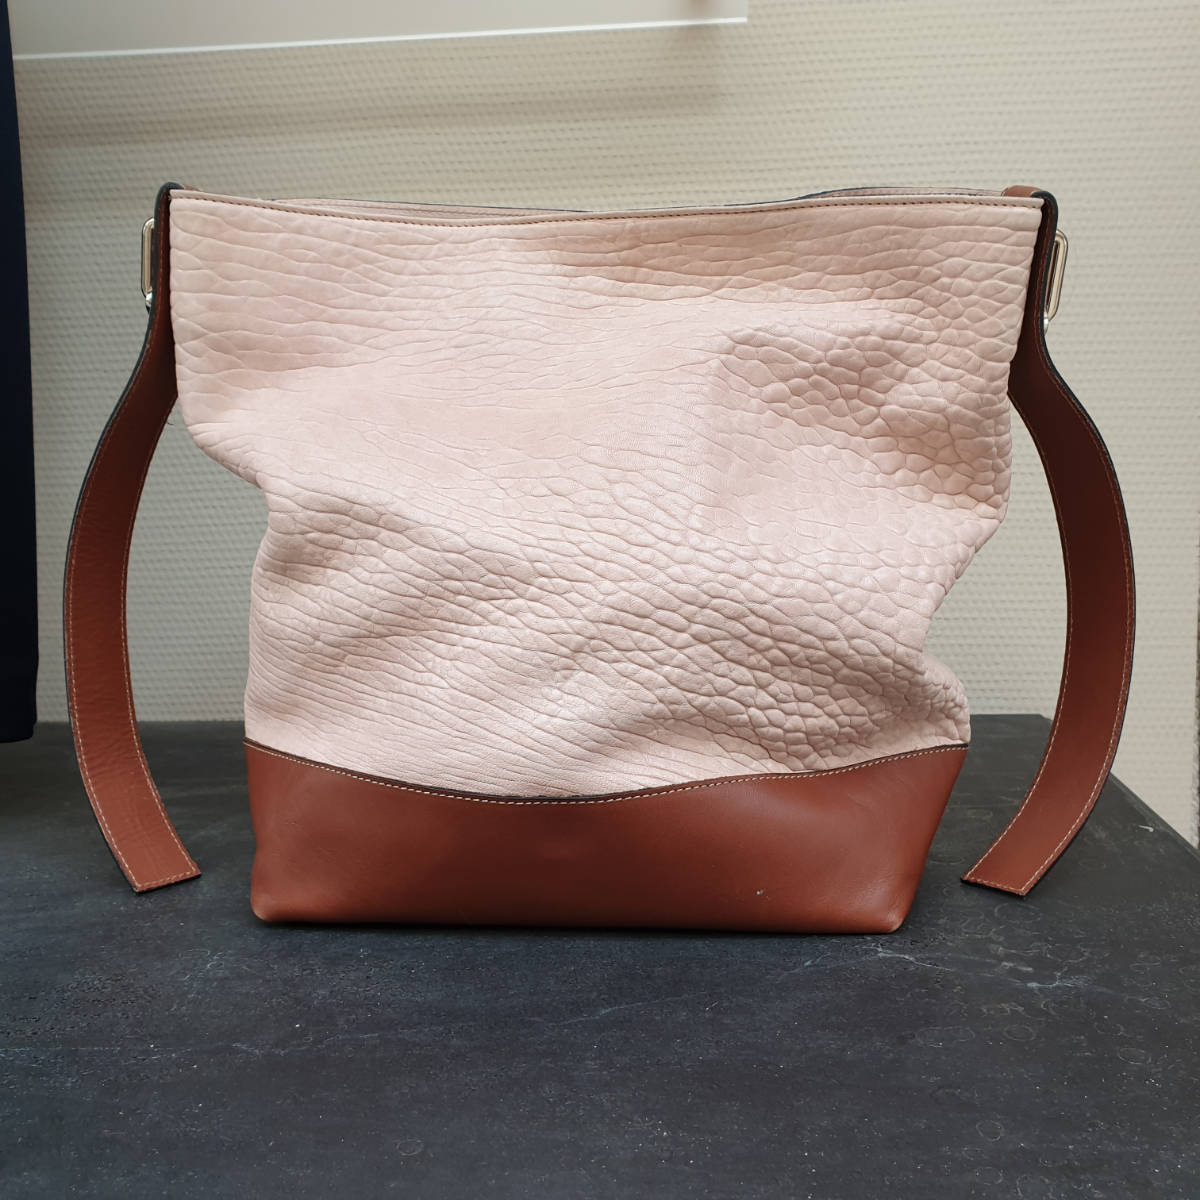 Vintage Leder Handtasche, in rosa und braun, Frontalansicht.